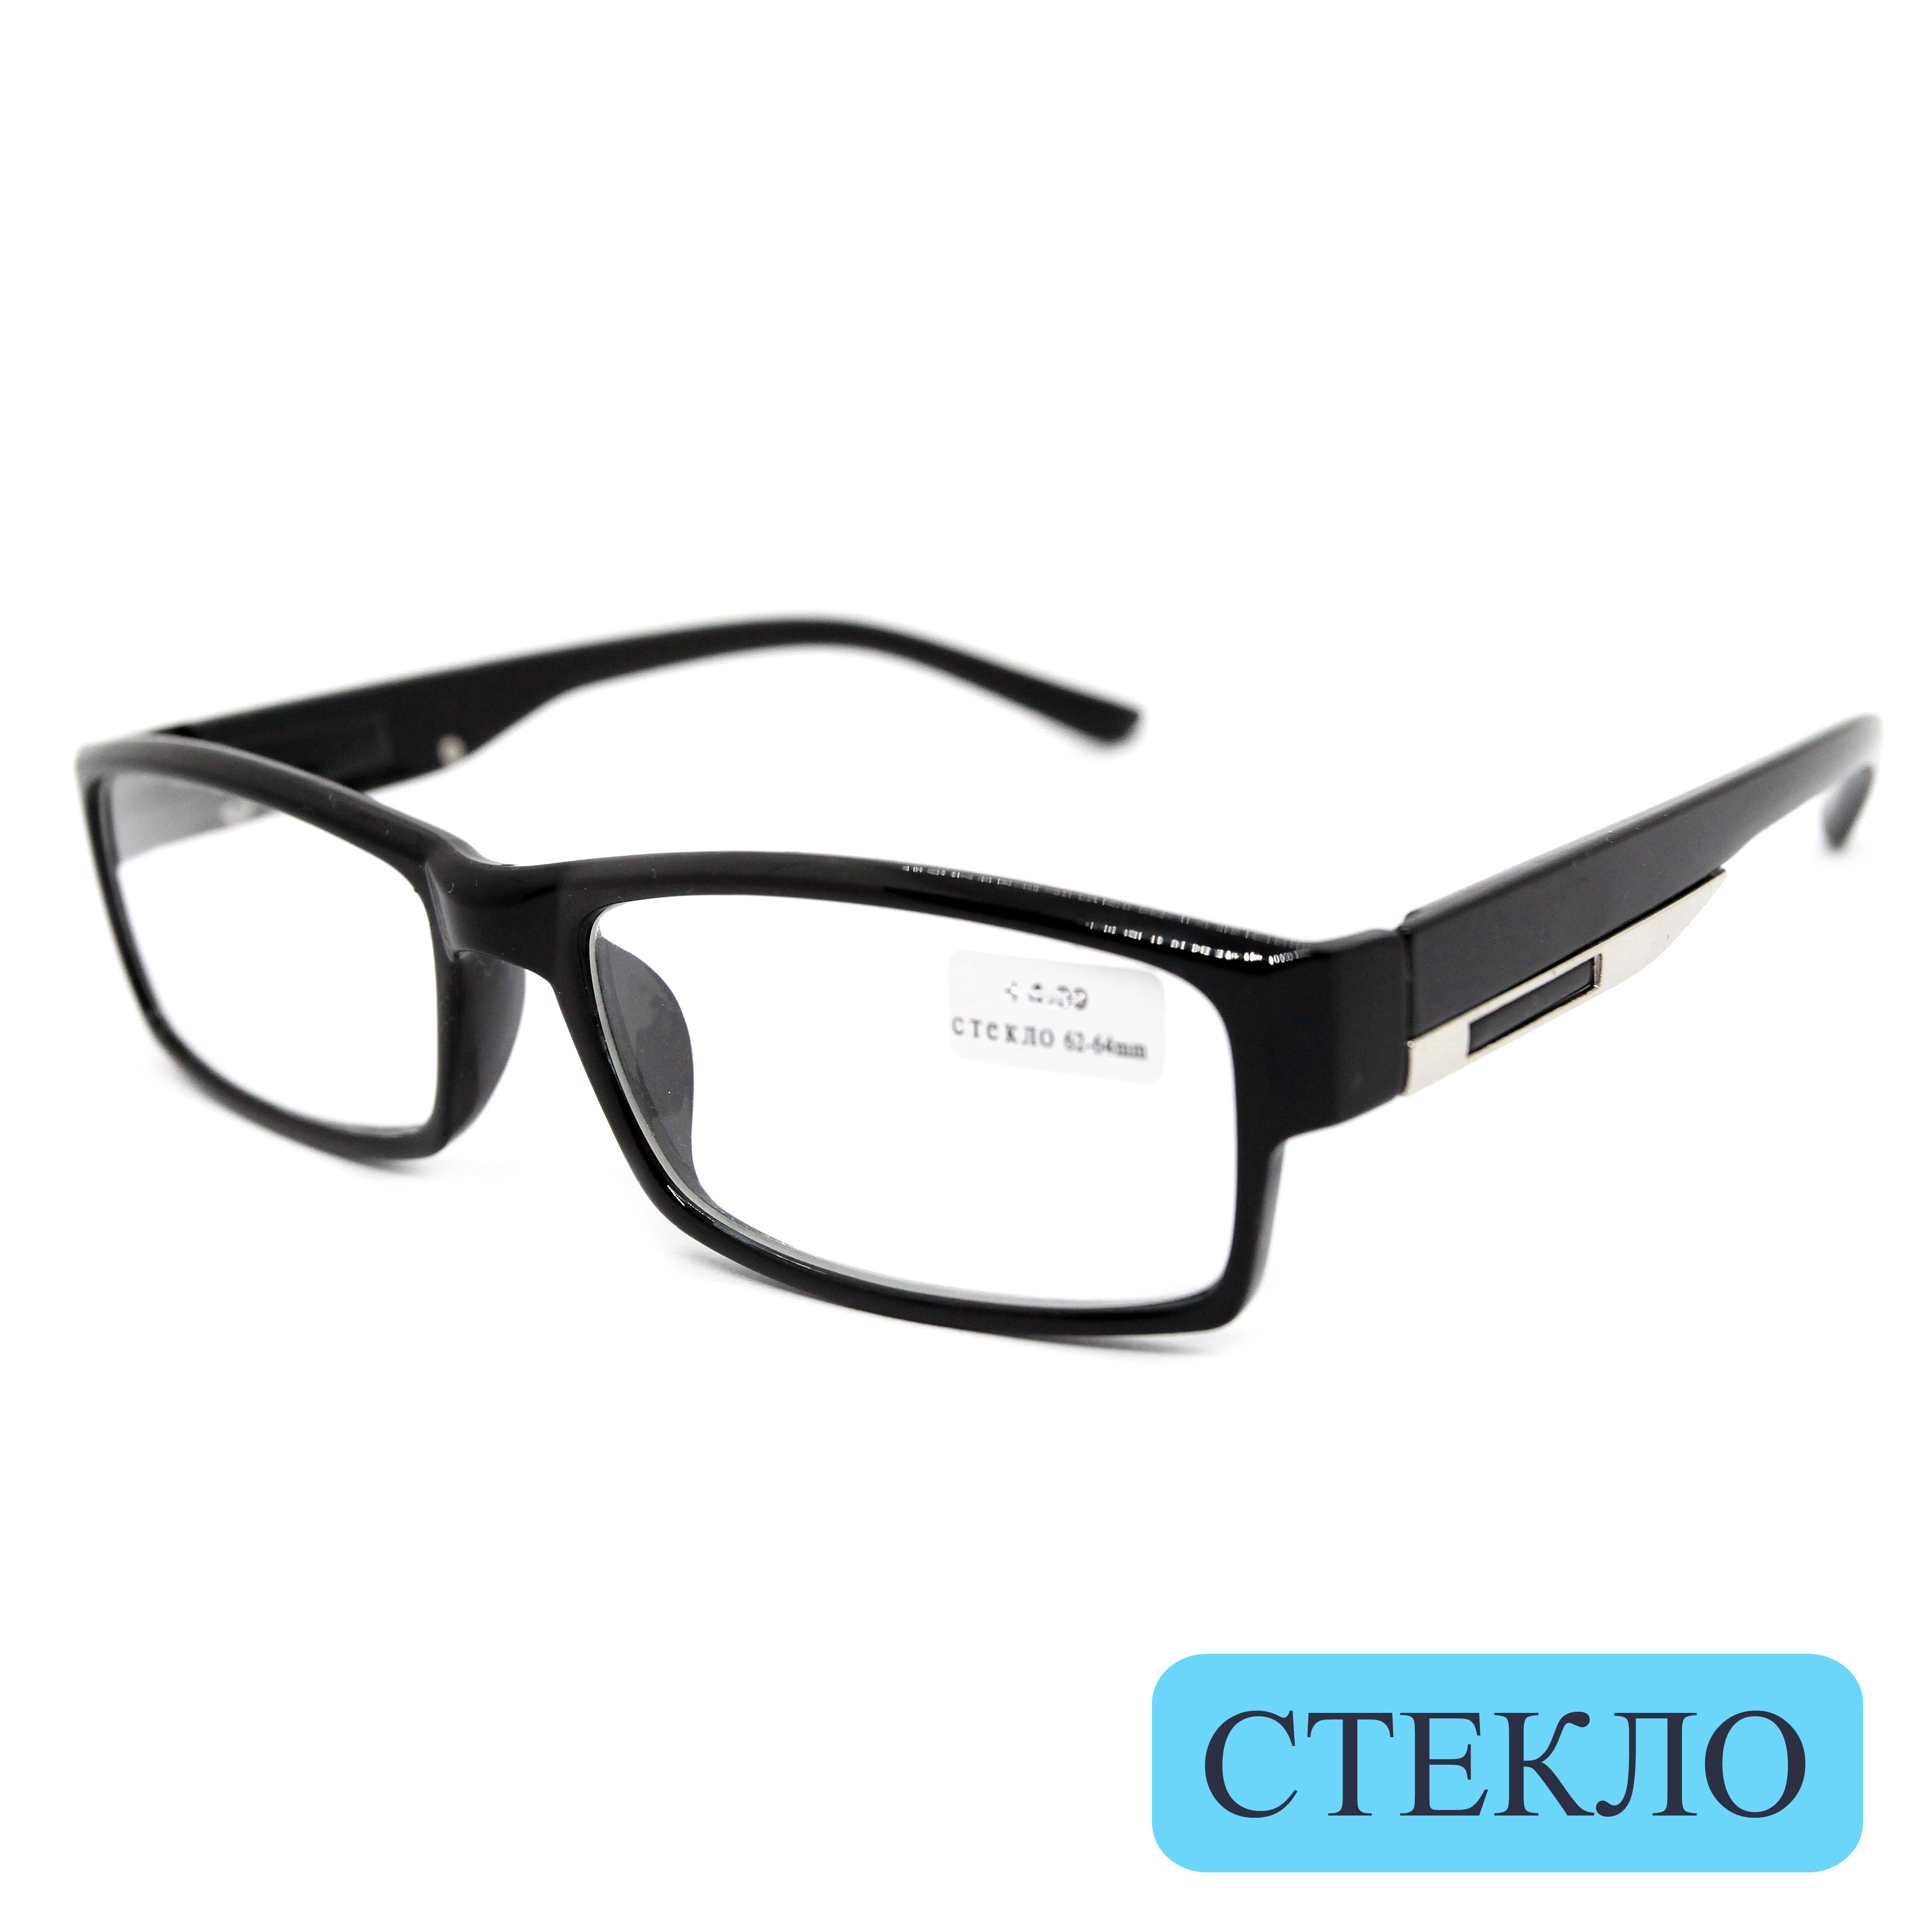 Готовые очки ВОСТОК 6613, со стеклянной линзой, +0,75, без футляра, черные, РЦ 62-64